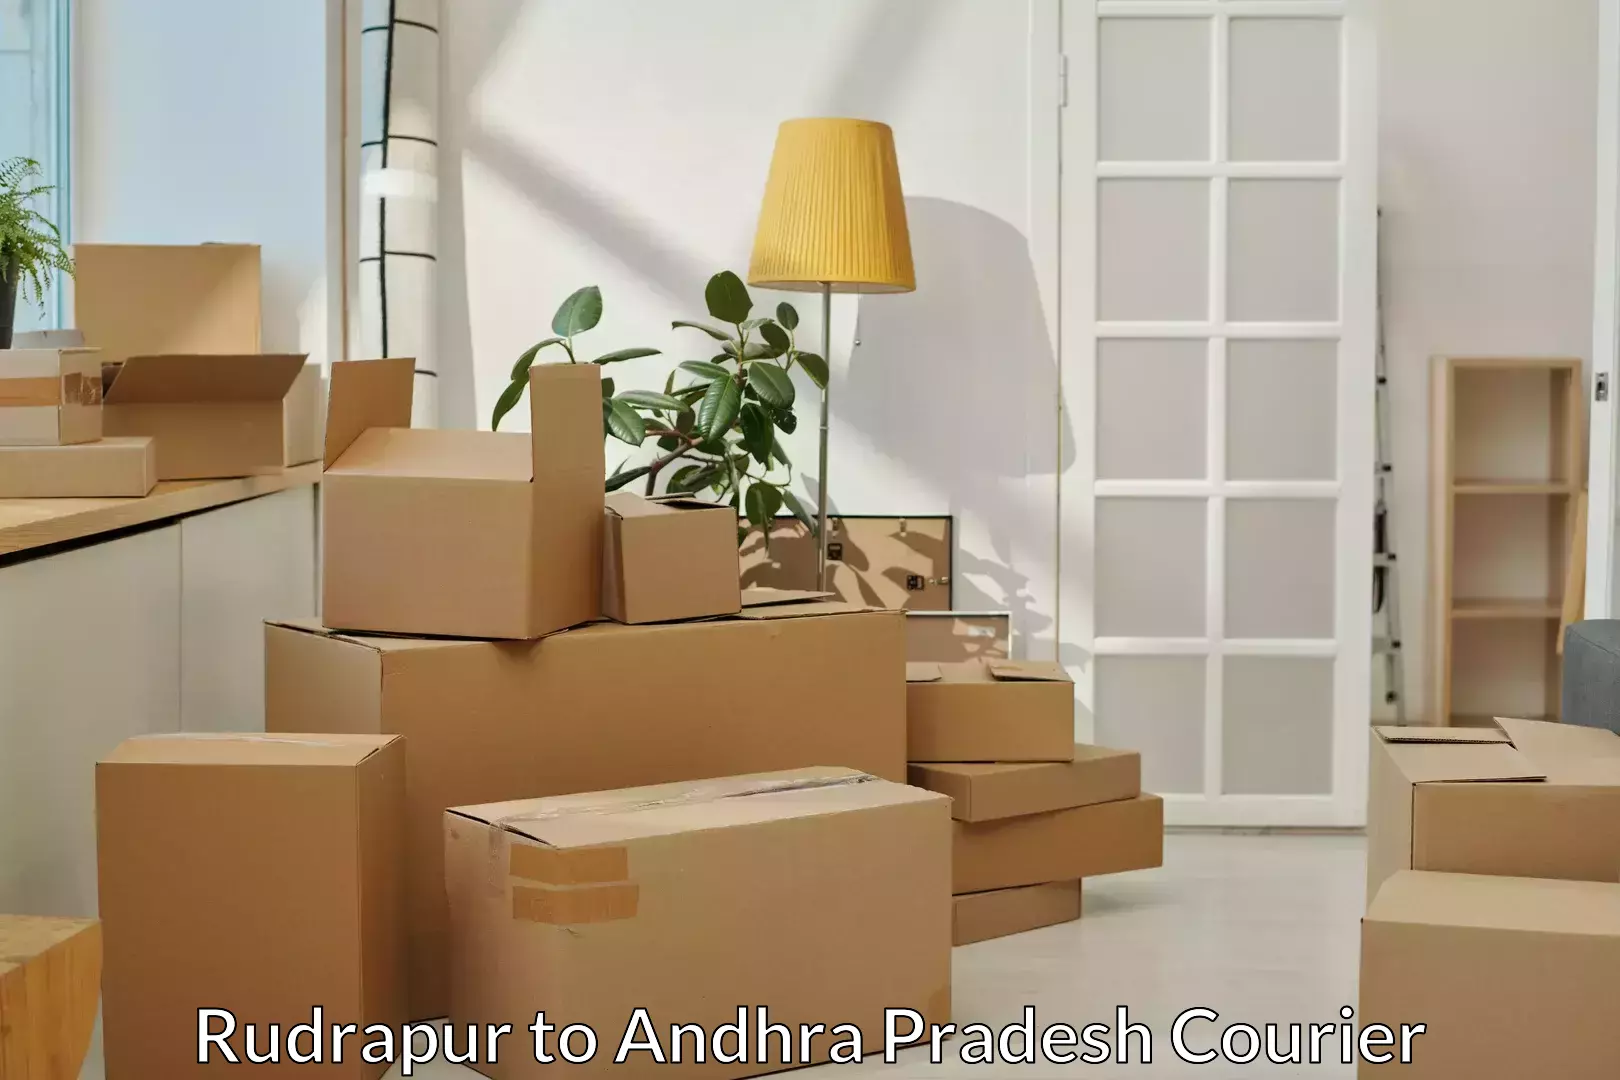 Premium moving services in Rudrapur to Andhra Pradesh